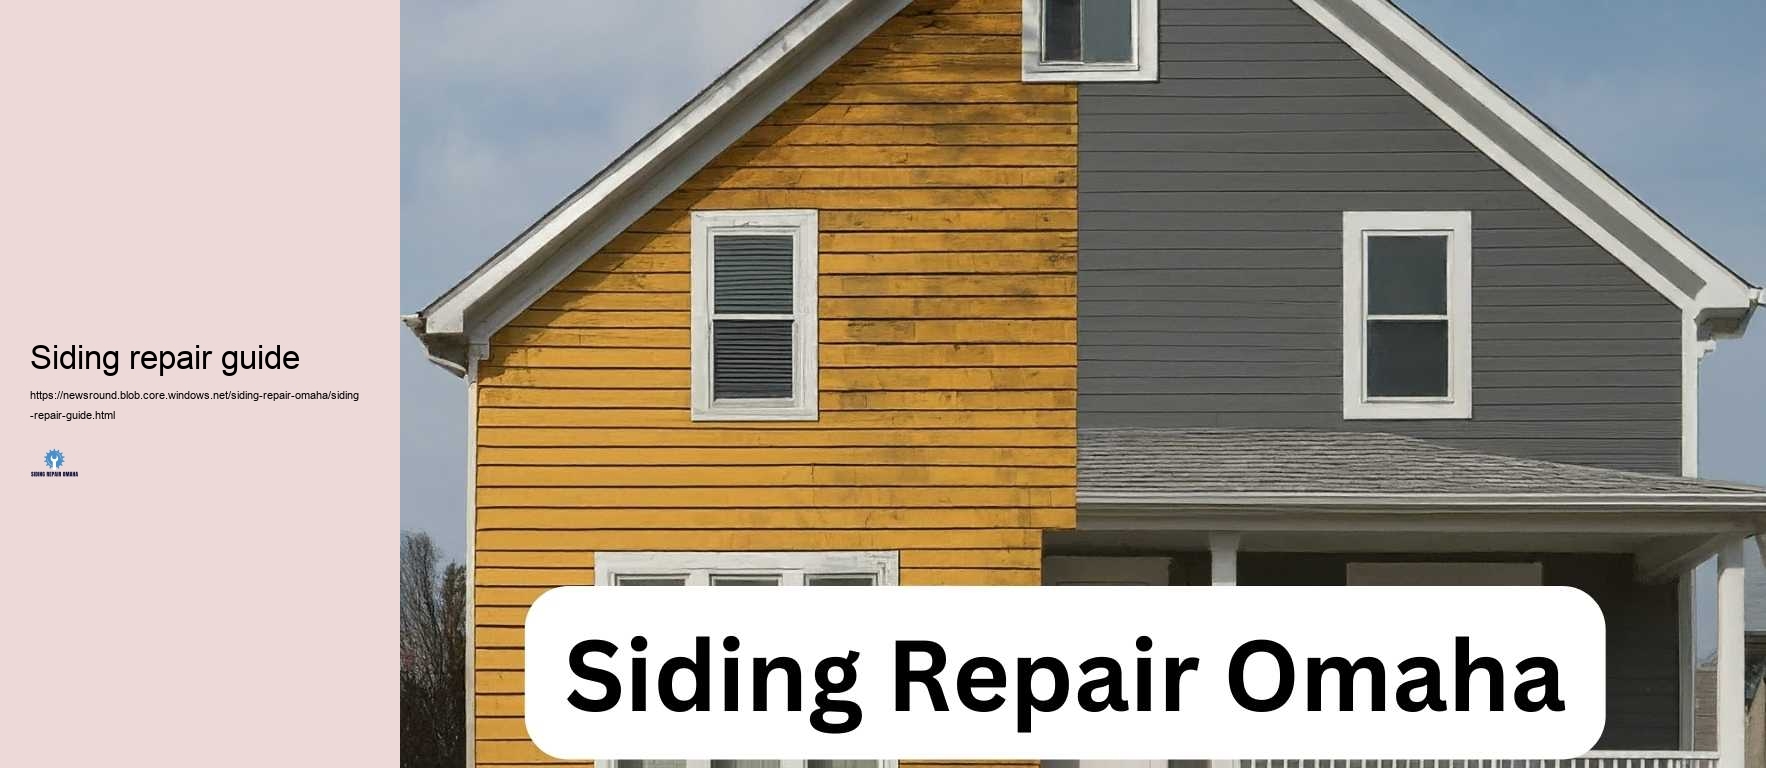 Siding repair guide